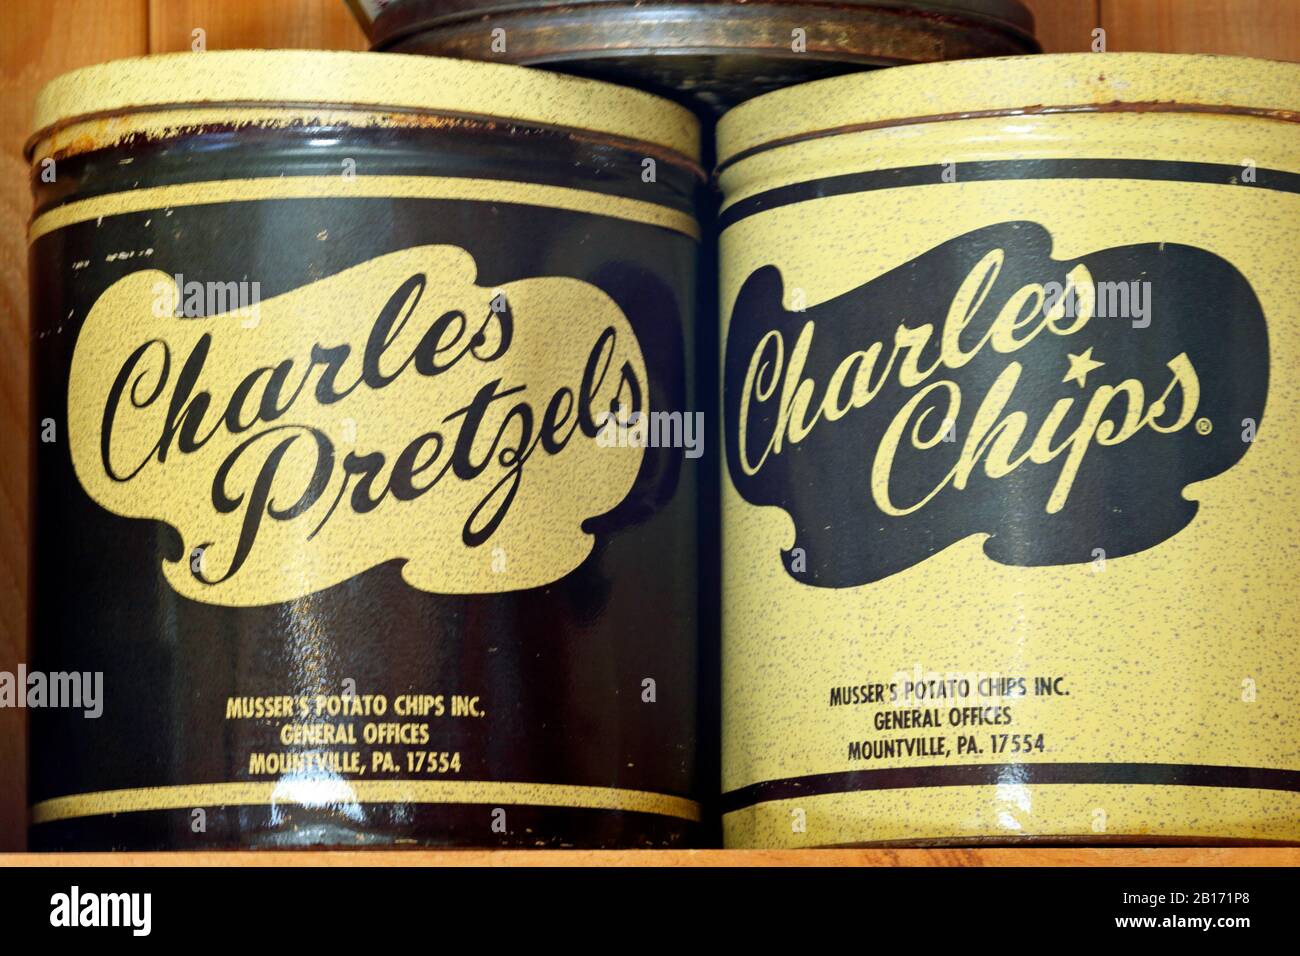 Les célèbres canisters à puce de pommes de terre Charles Chips portant le nom d'entreprise original - Musser's Potato Chip's Inc. Sur l'étain Banque D'Images